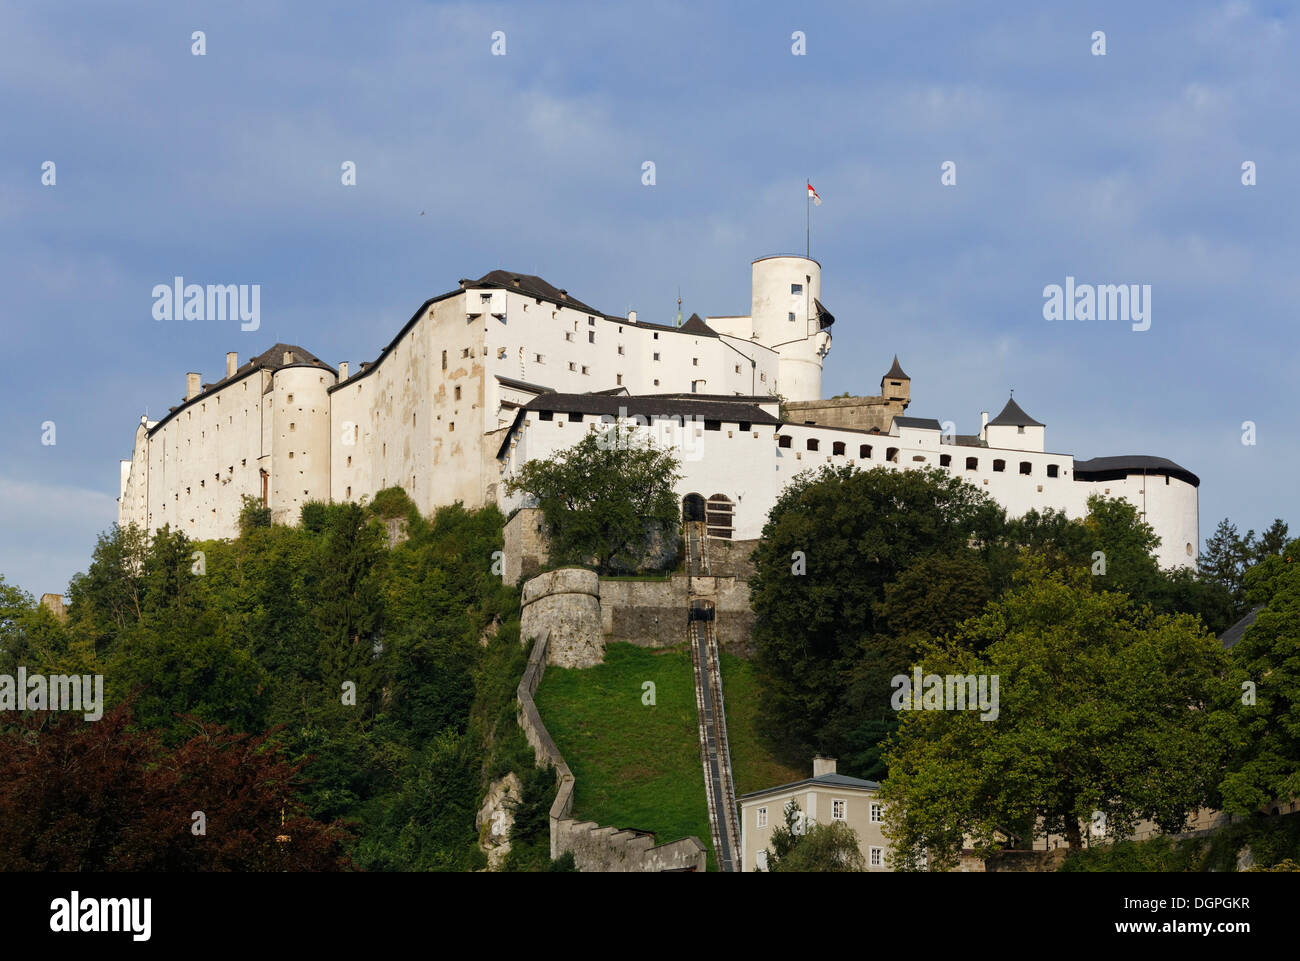 Festung Château de Hohensalzburg, forteresse, Salzbourg, Autriche, Europe, PublicGround Banque D'Images